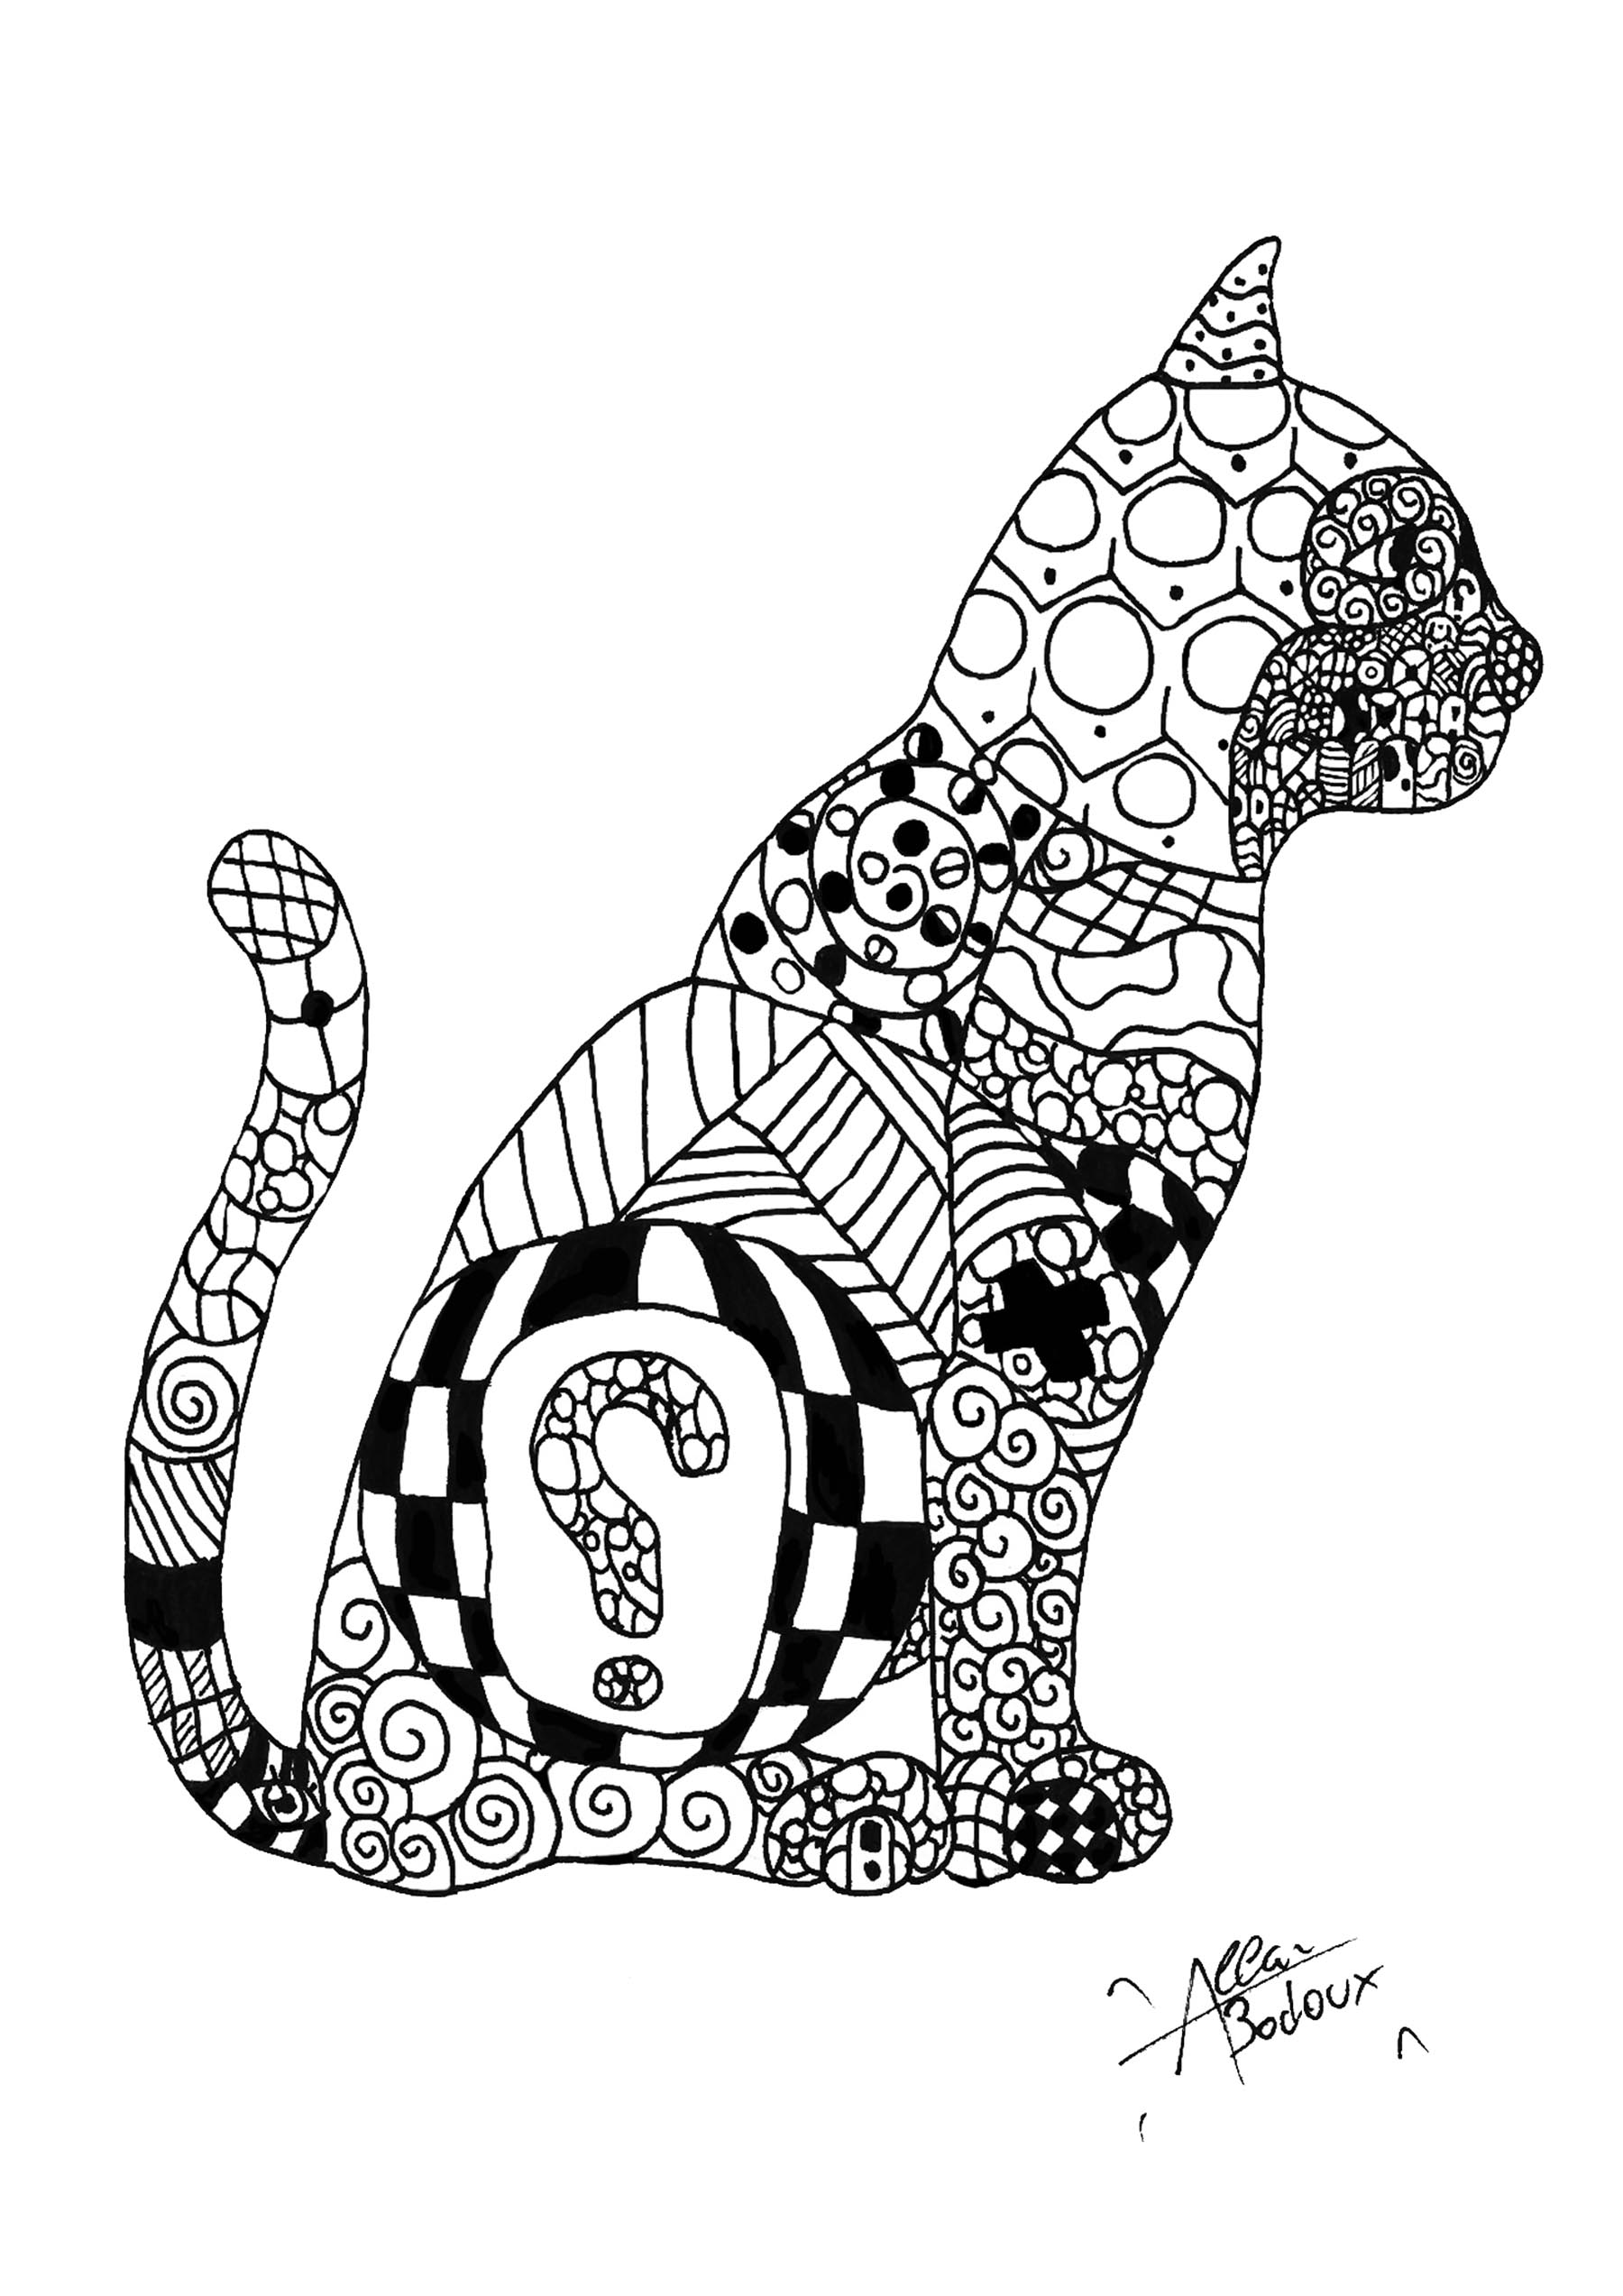 Colorear para adultos  : Gatos - 1, Artista : Allan